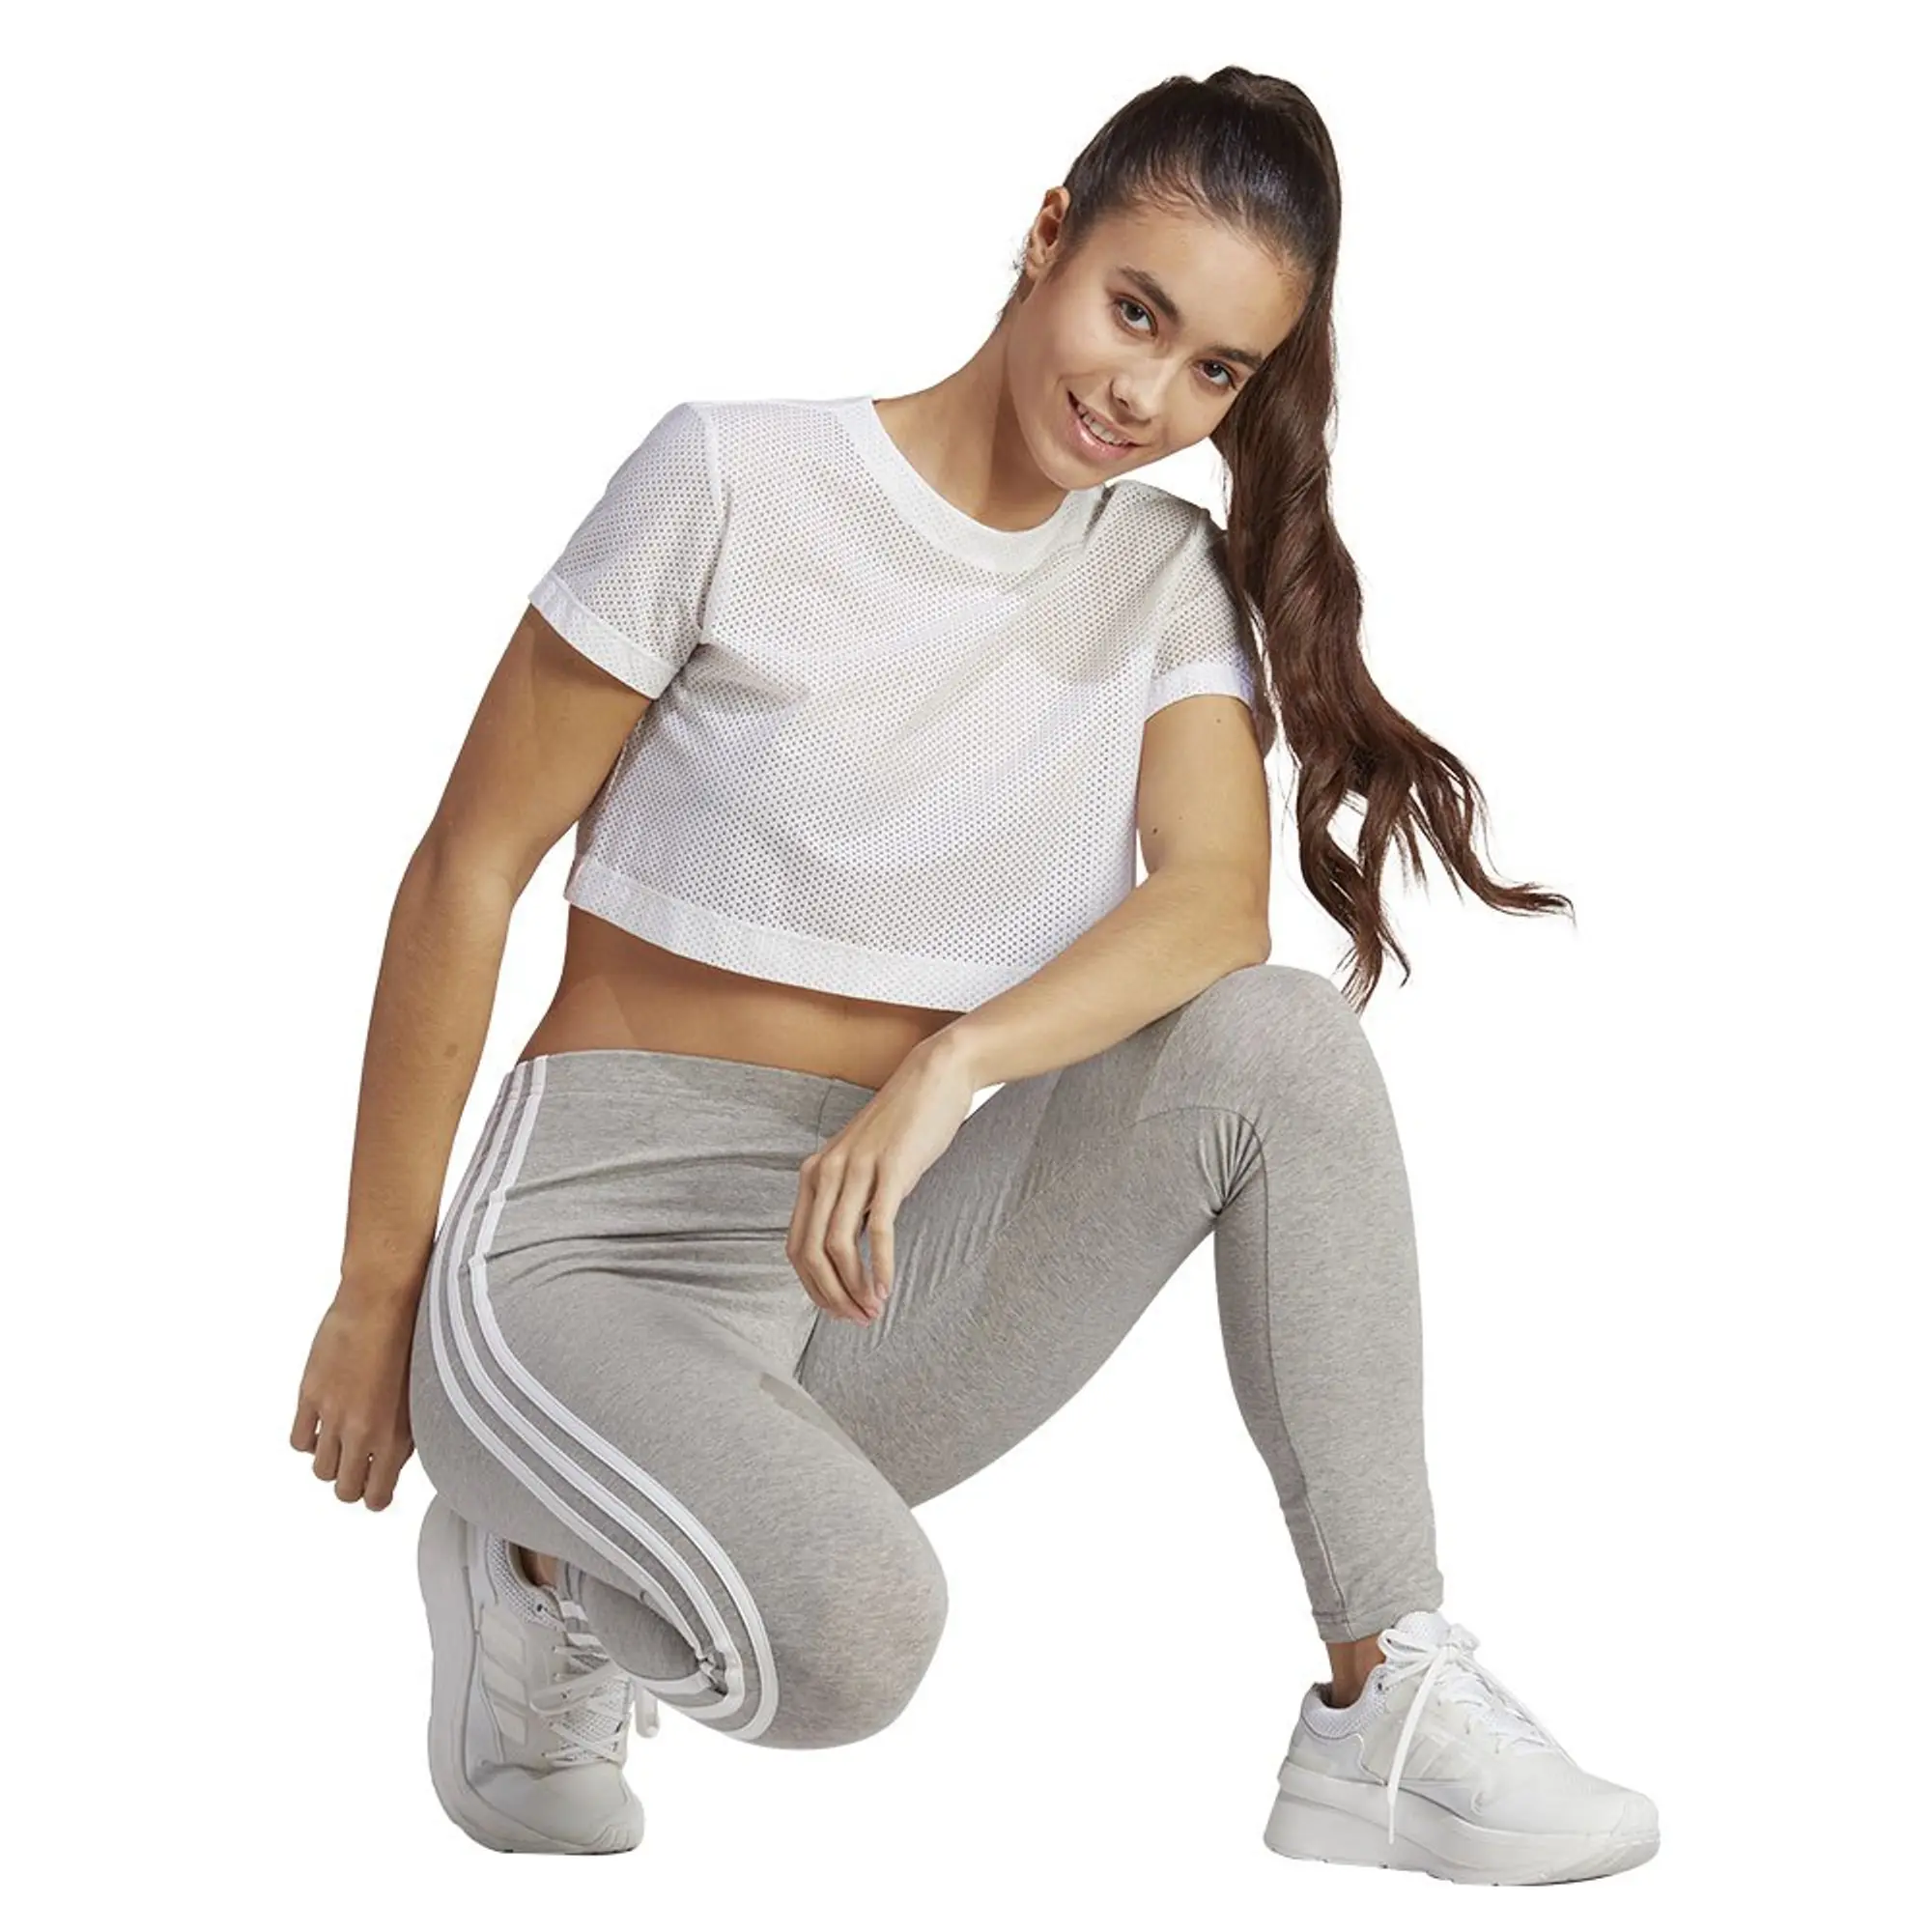 adidas Sportswear Essentials 3-stripes High-waisted Single Shirt Leggings - Grey/White, Grey